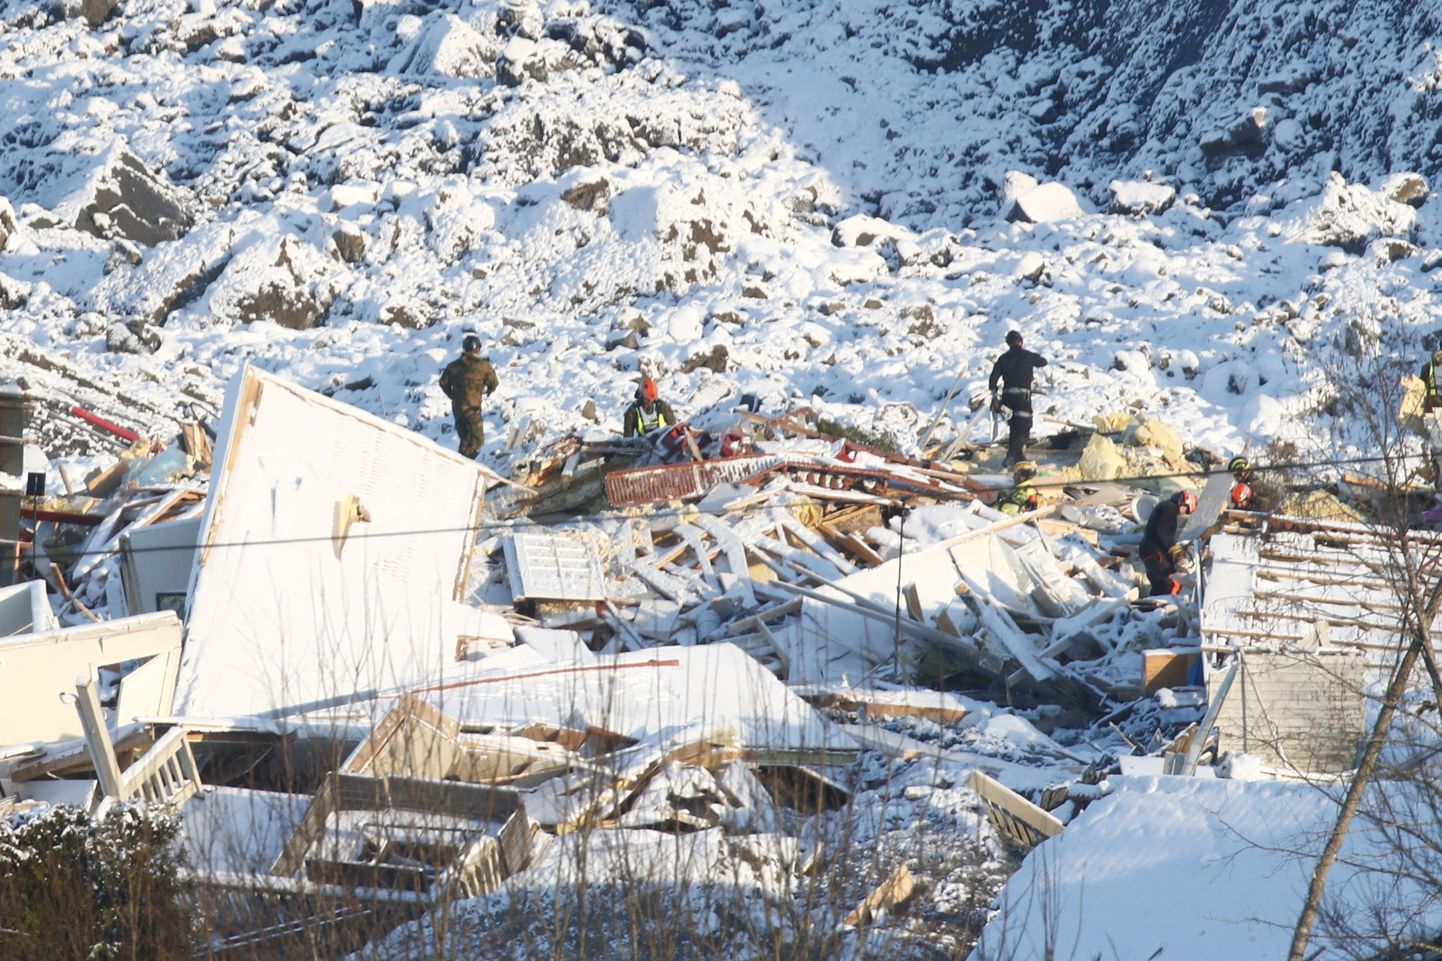 Päästetöötajad otsimas kadunud inimesi Norras Gjerdrumi vallas Askis, kus 30. detsembril 2020 toimus maalihe